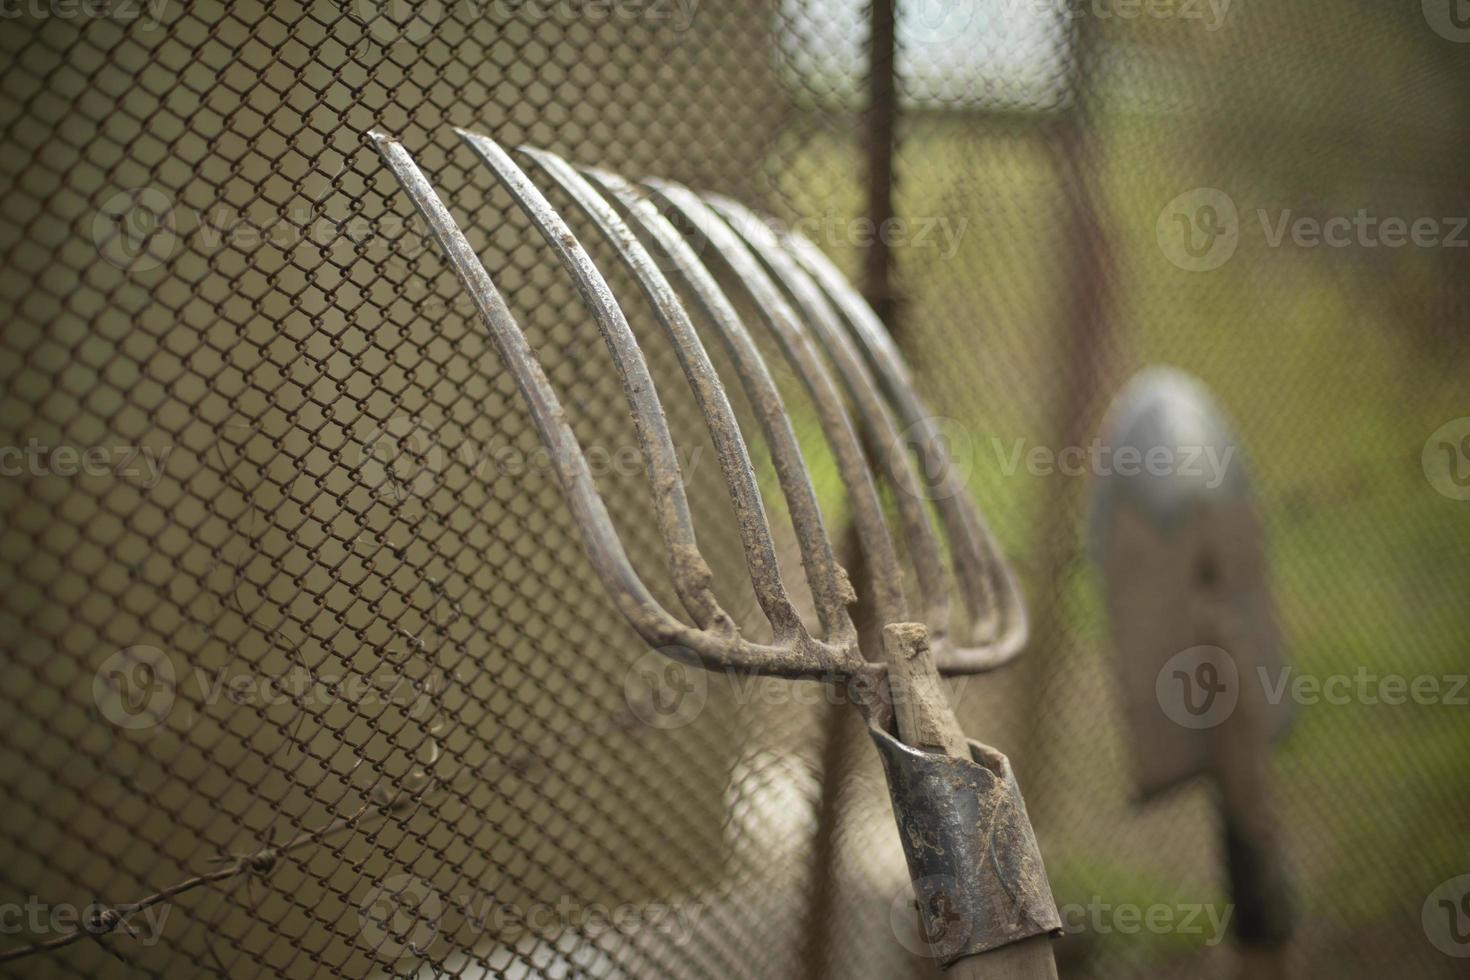 herramientas de jardín. el rastrillo de acero se apoya contra la valla de malla. foto